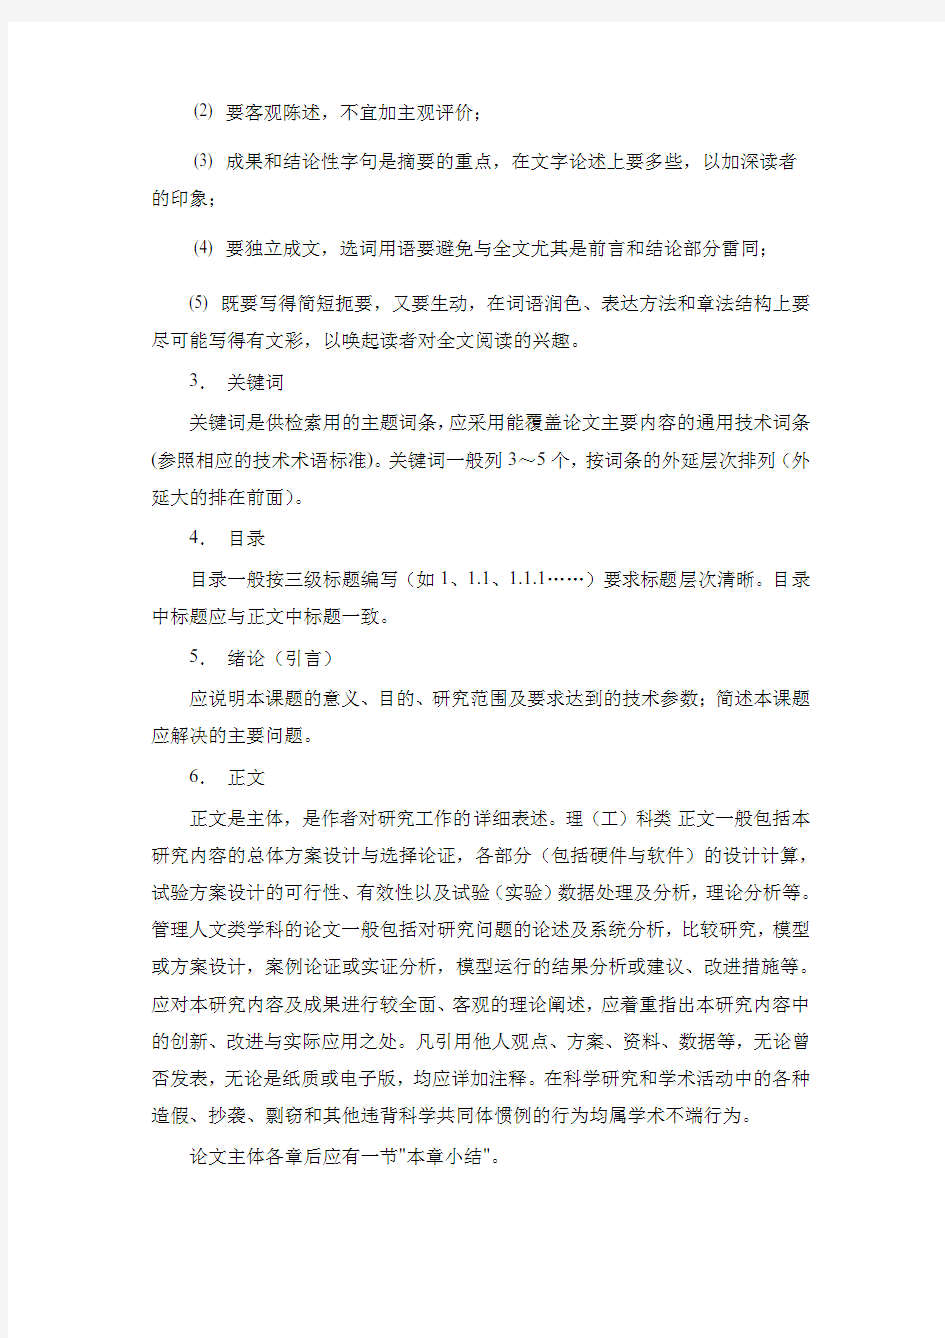 上海交通大学本科生毕业设计(论文)撰写规范